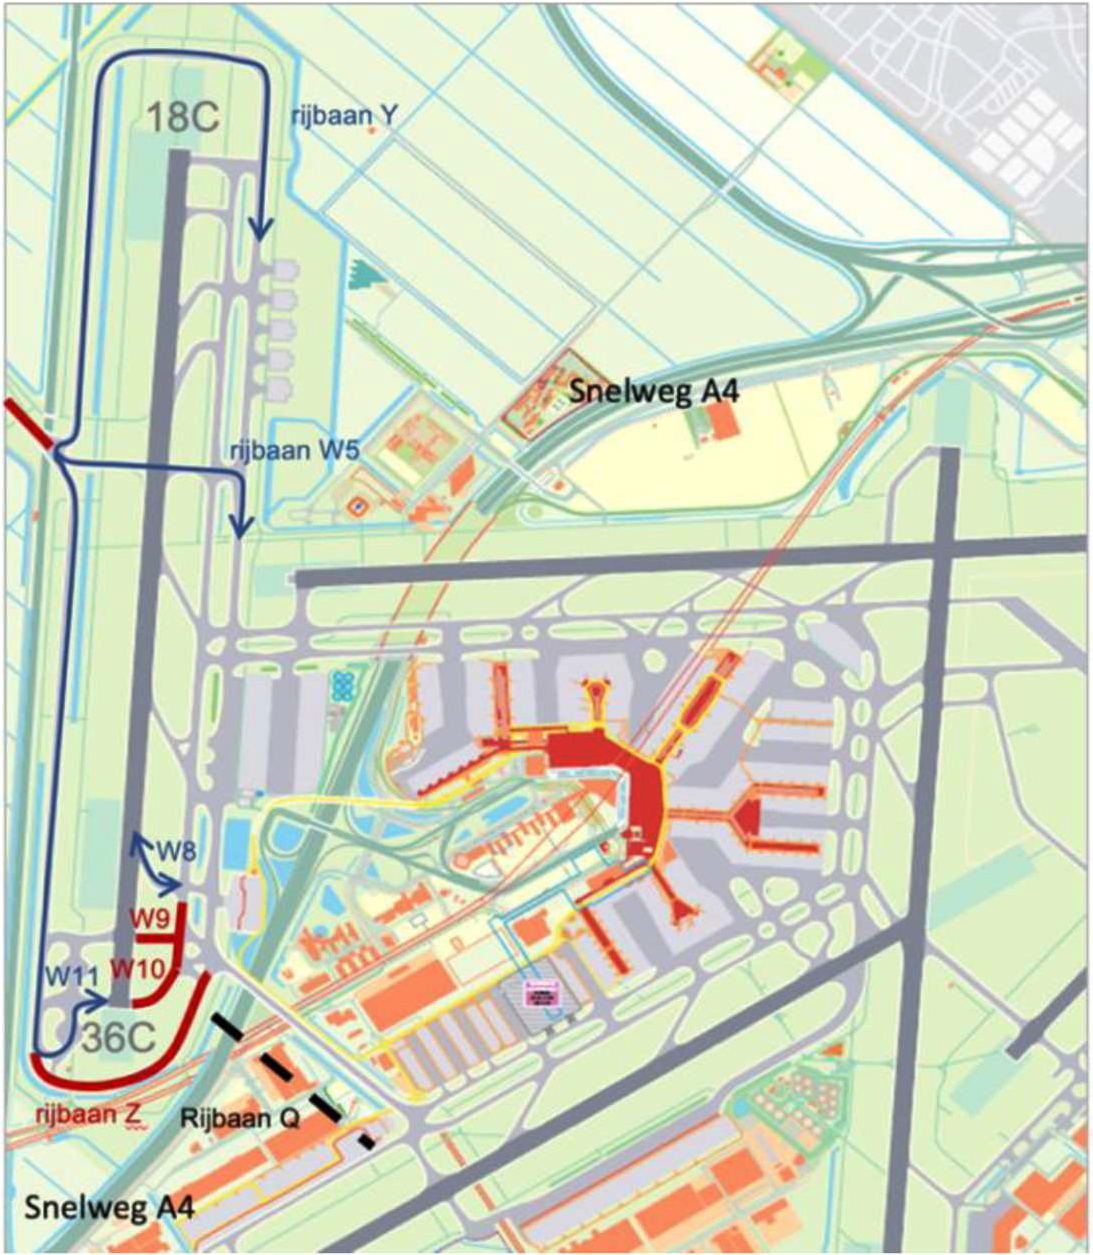 Overzicht van gesloten rijbanen, weergegeven in rood, beschikbare rijbanen, weergegeven in blauw, en de locatie van het tweede viaduct voor nieuwbouw van de rijbaan Q, weergegeven met een zwarte stippellijn.